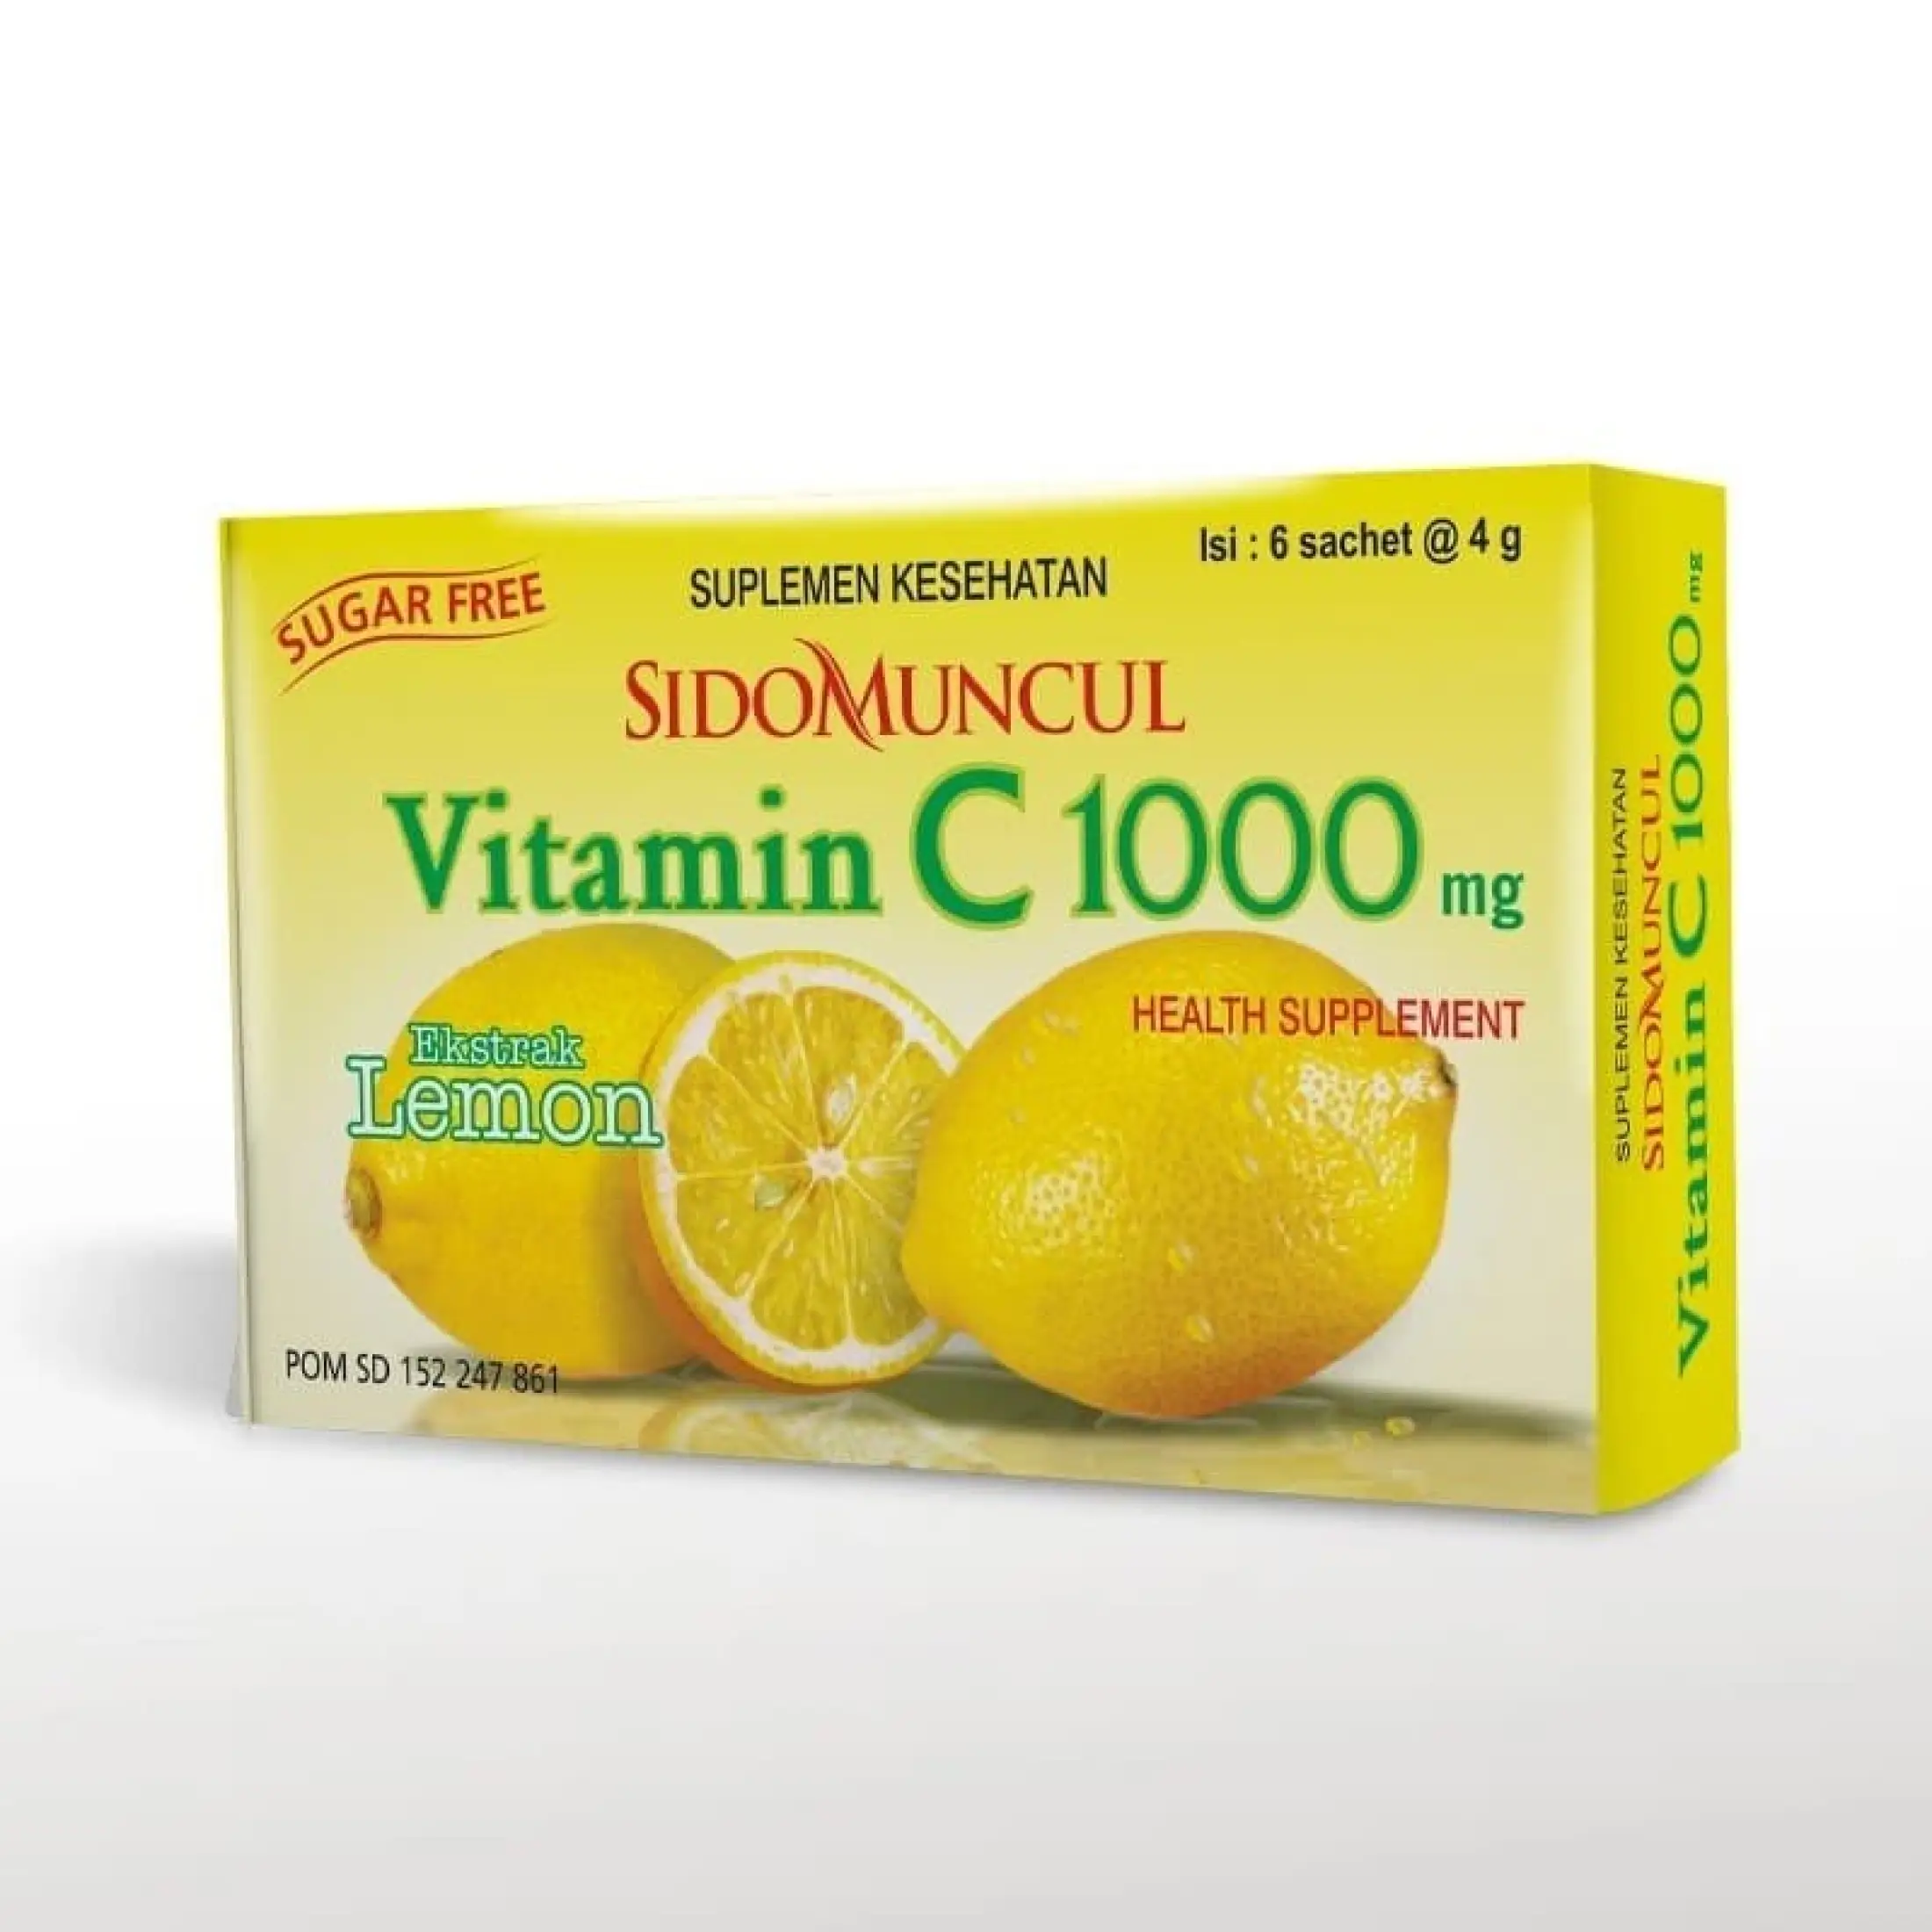 Vitamin C 1000 Sidomuncul Vitamin C 1000mg Vitamin C 1000mg Tablet Vitamin C 1000mg Botol Vitamin C mg Vitamin C 1000mg Kimia Farma Vitamin C 1000